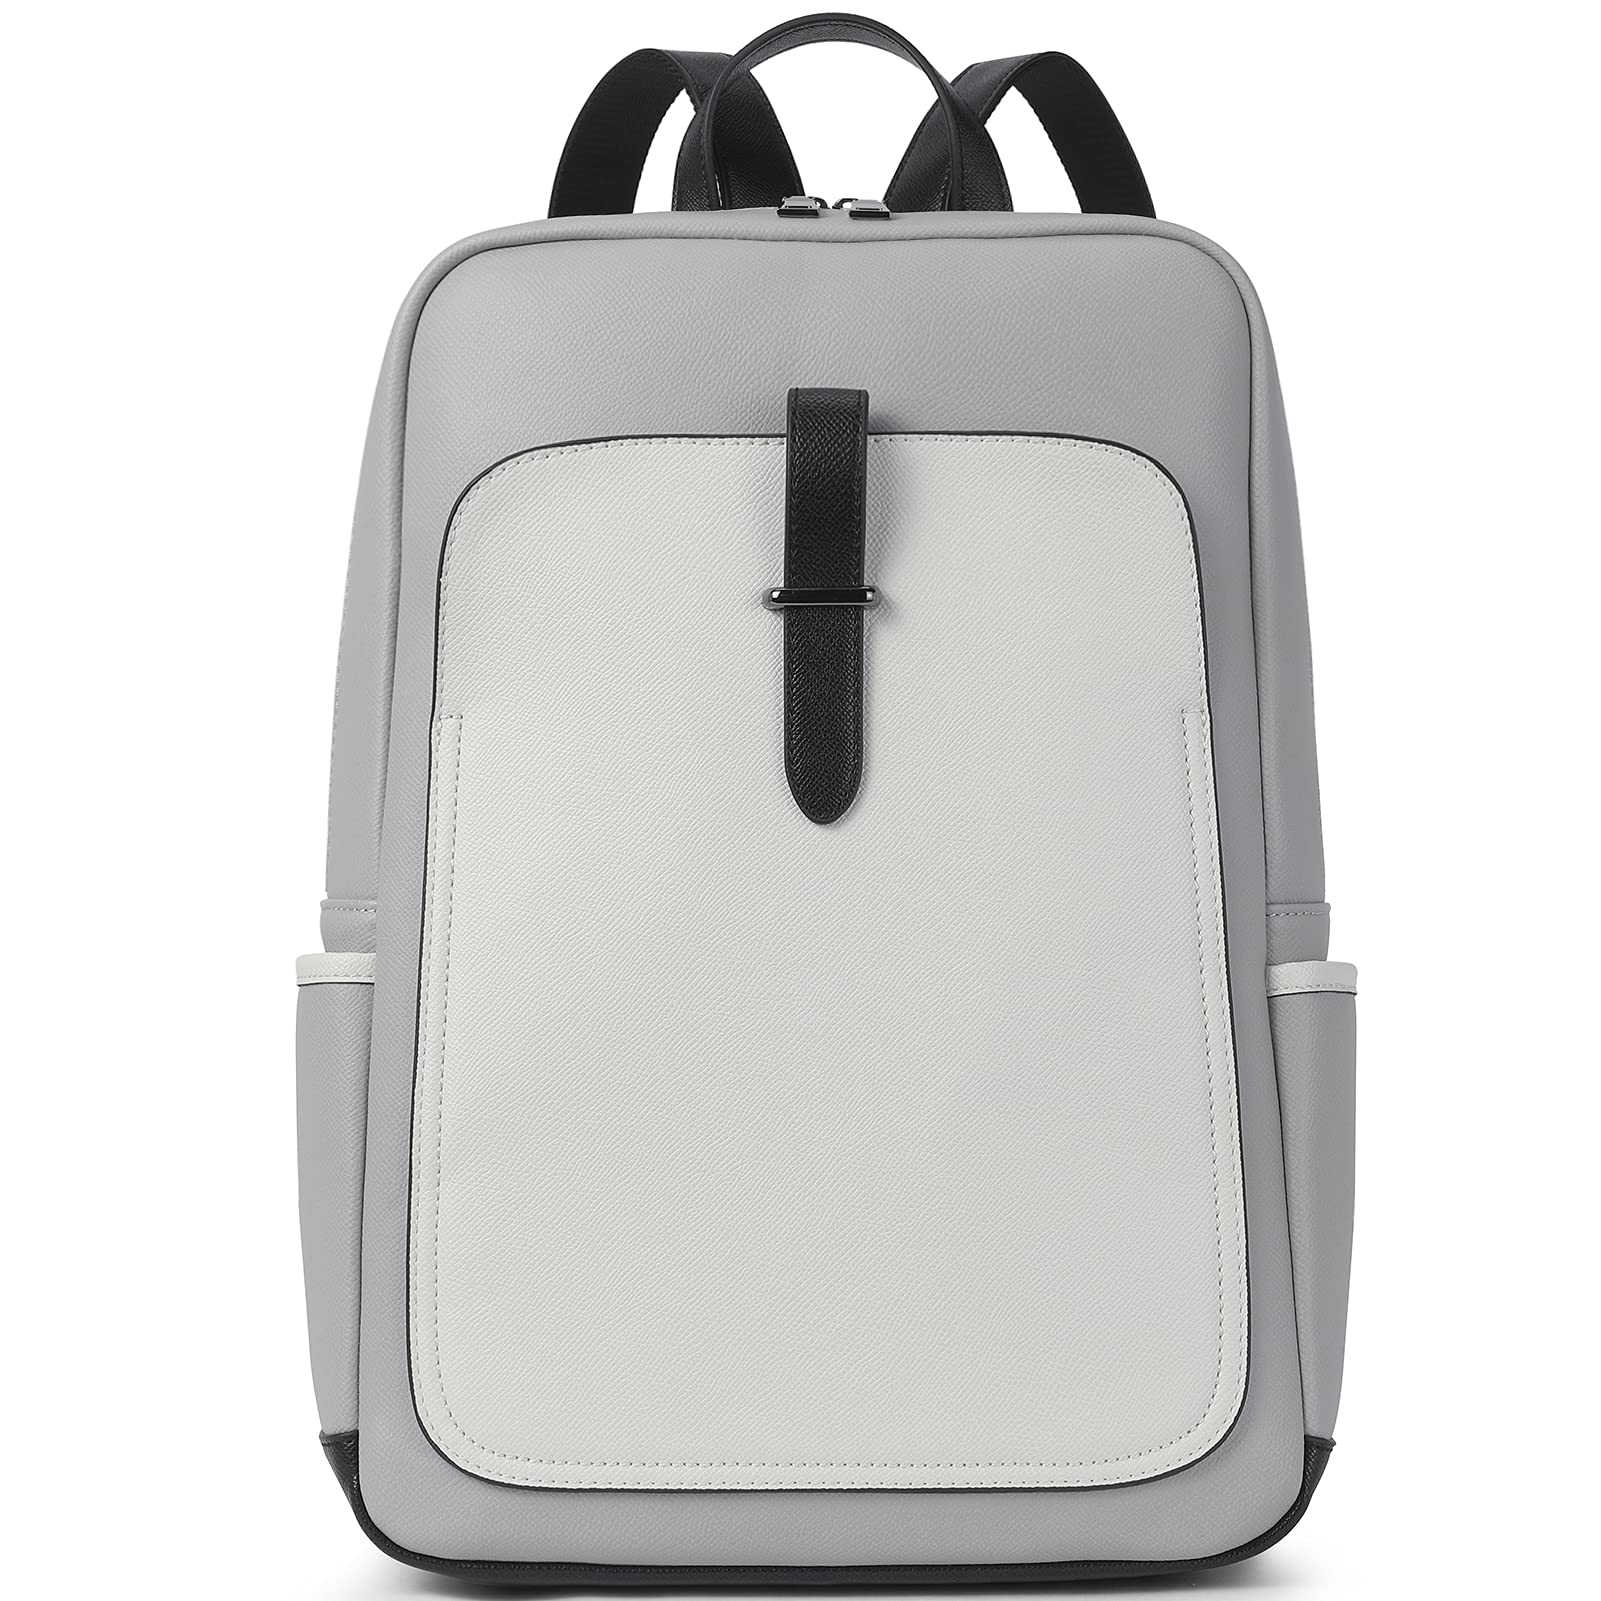 送料無料BROMEN Leather Laptop Backpack for Women 15.6 inch Computer Backpack Business Travel Professional Work Daypack Co